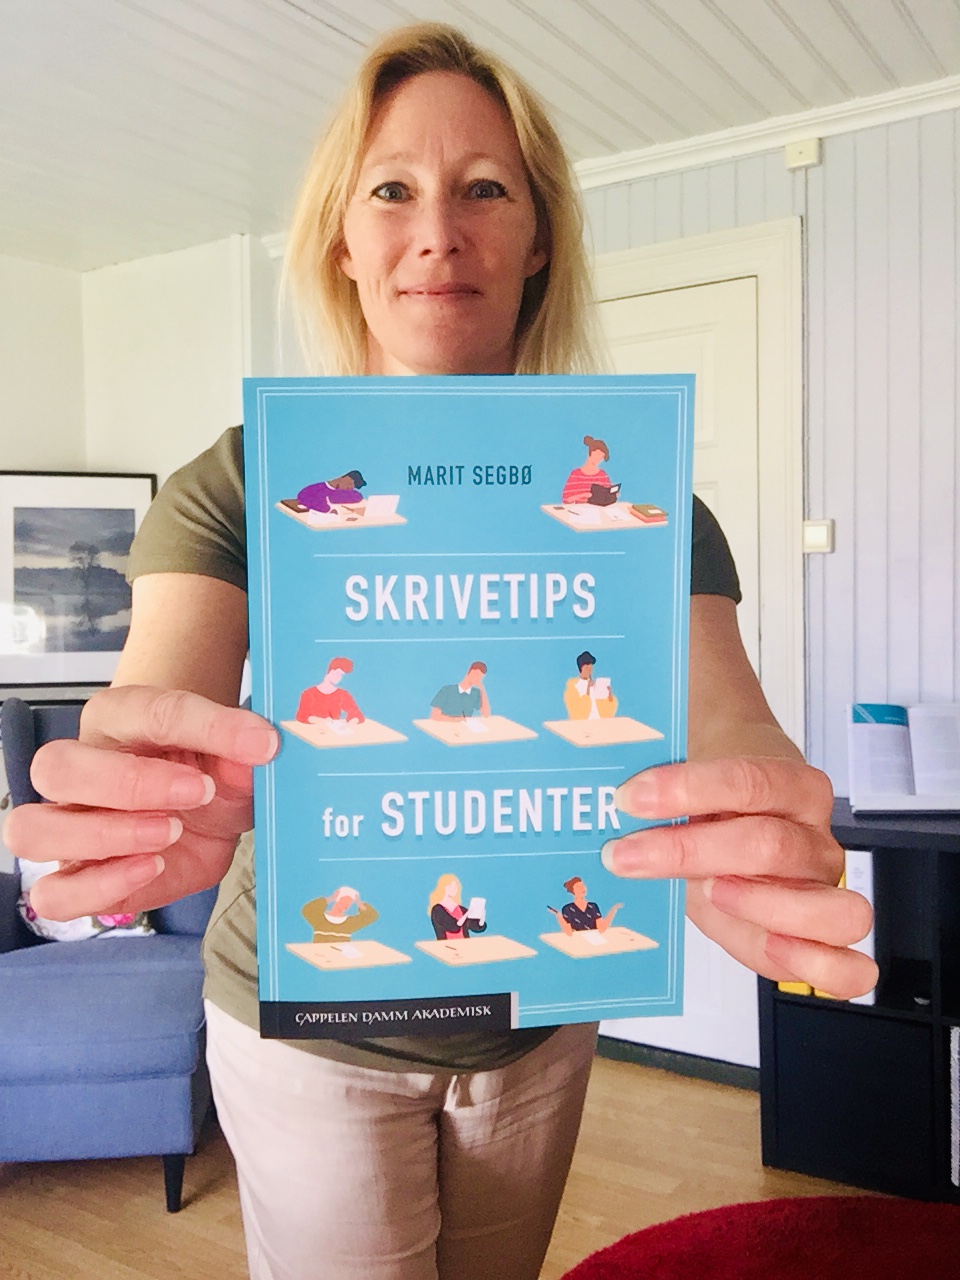 Bilde av Marit Segbø med boken Skrivetips for studenter, selges hos Cingulum.no